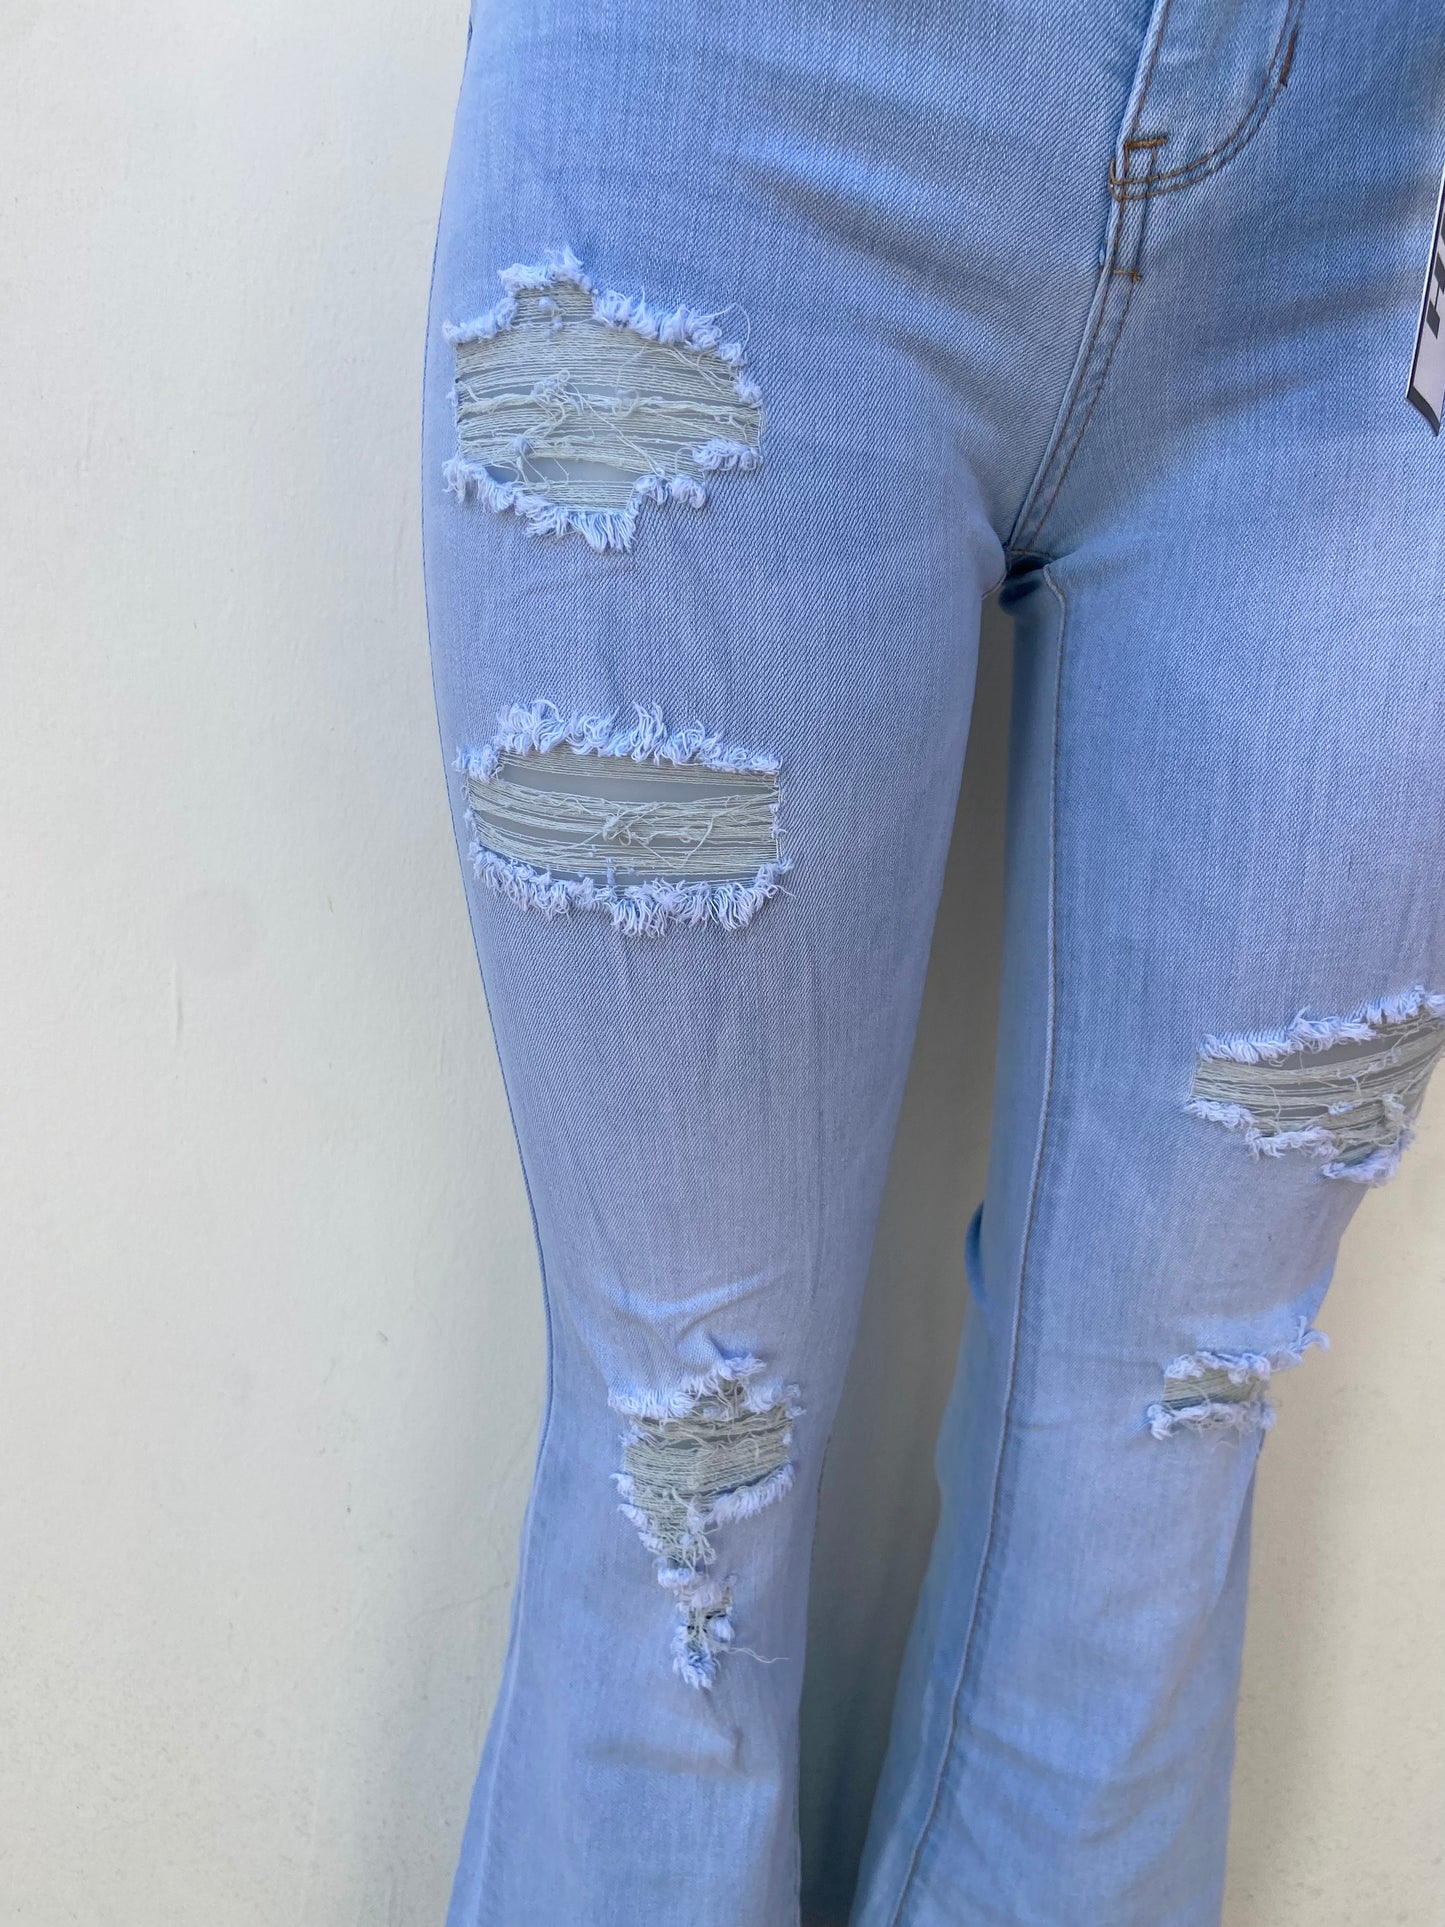 Pantalon jeans Rue21 original de color azul claro con rasgados estilo campana HIGH RISE FLARE